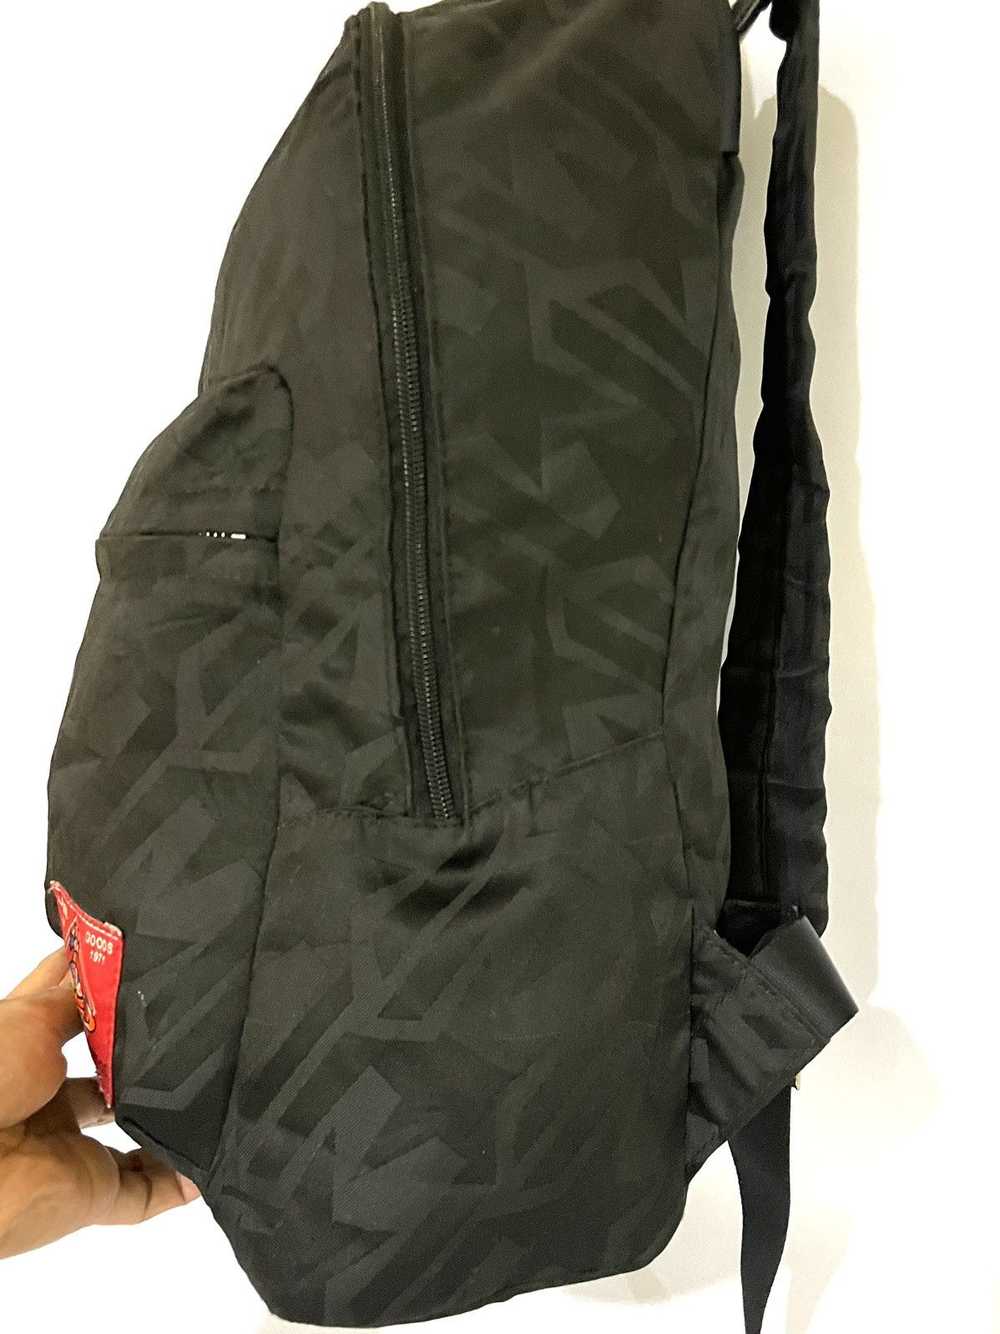 Vivienne Westwood Nylon Star Orb Backpack Bag - image 8